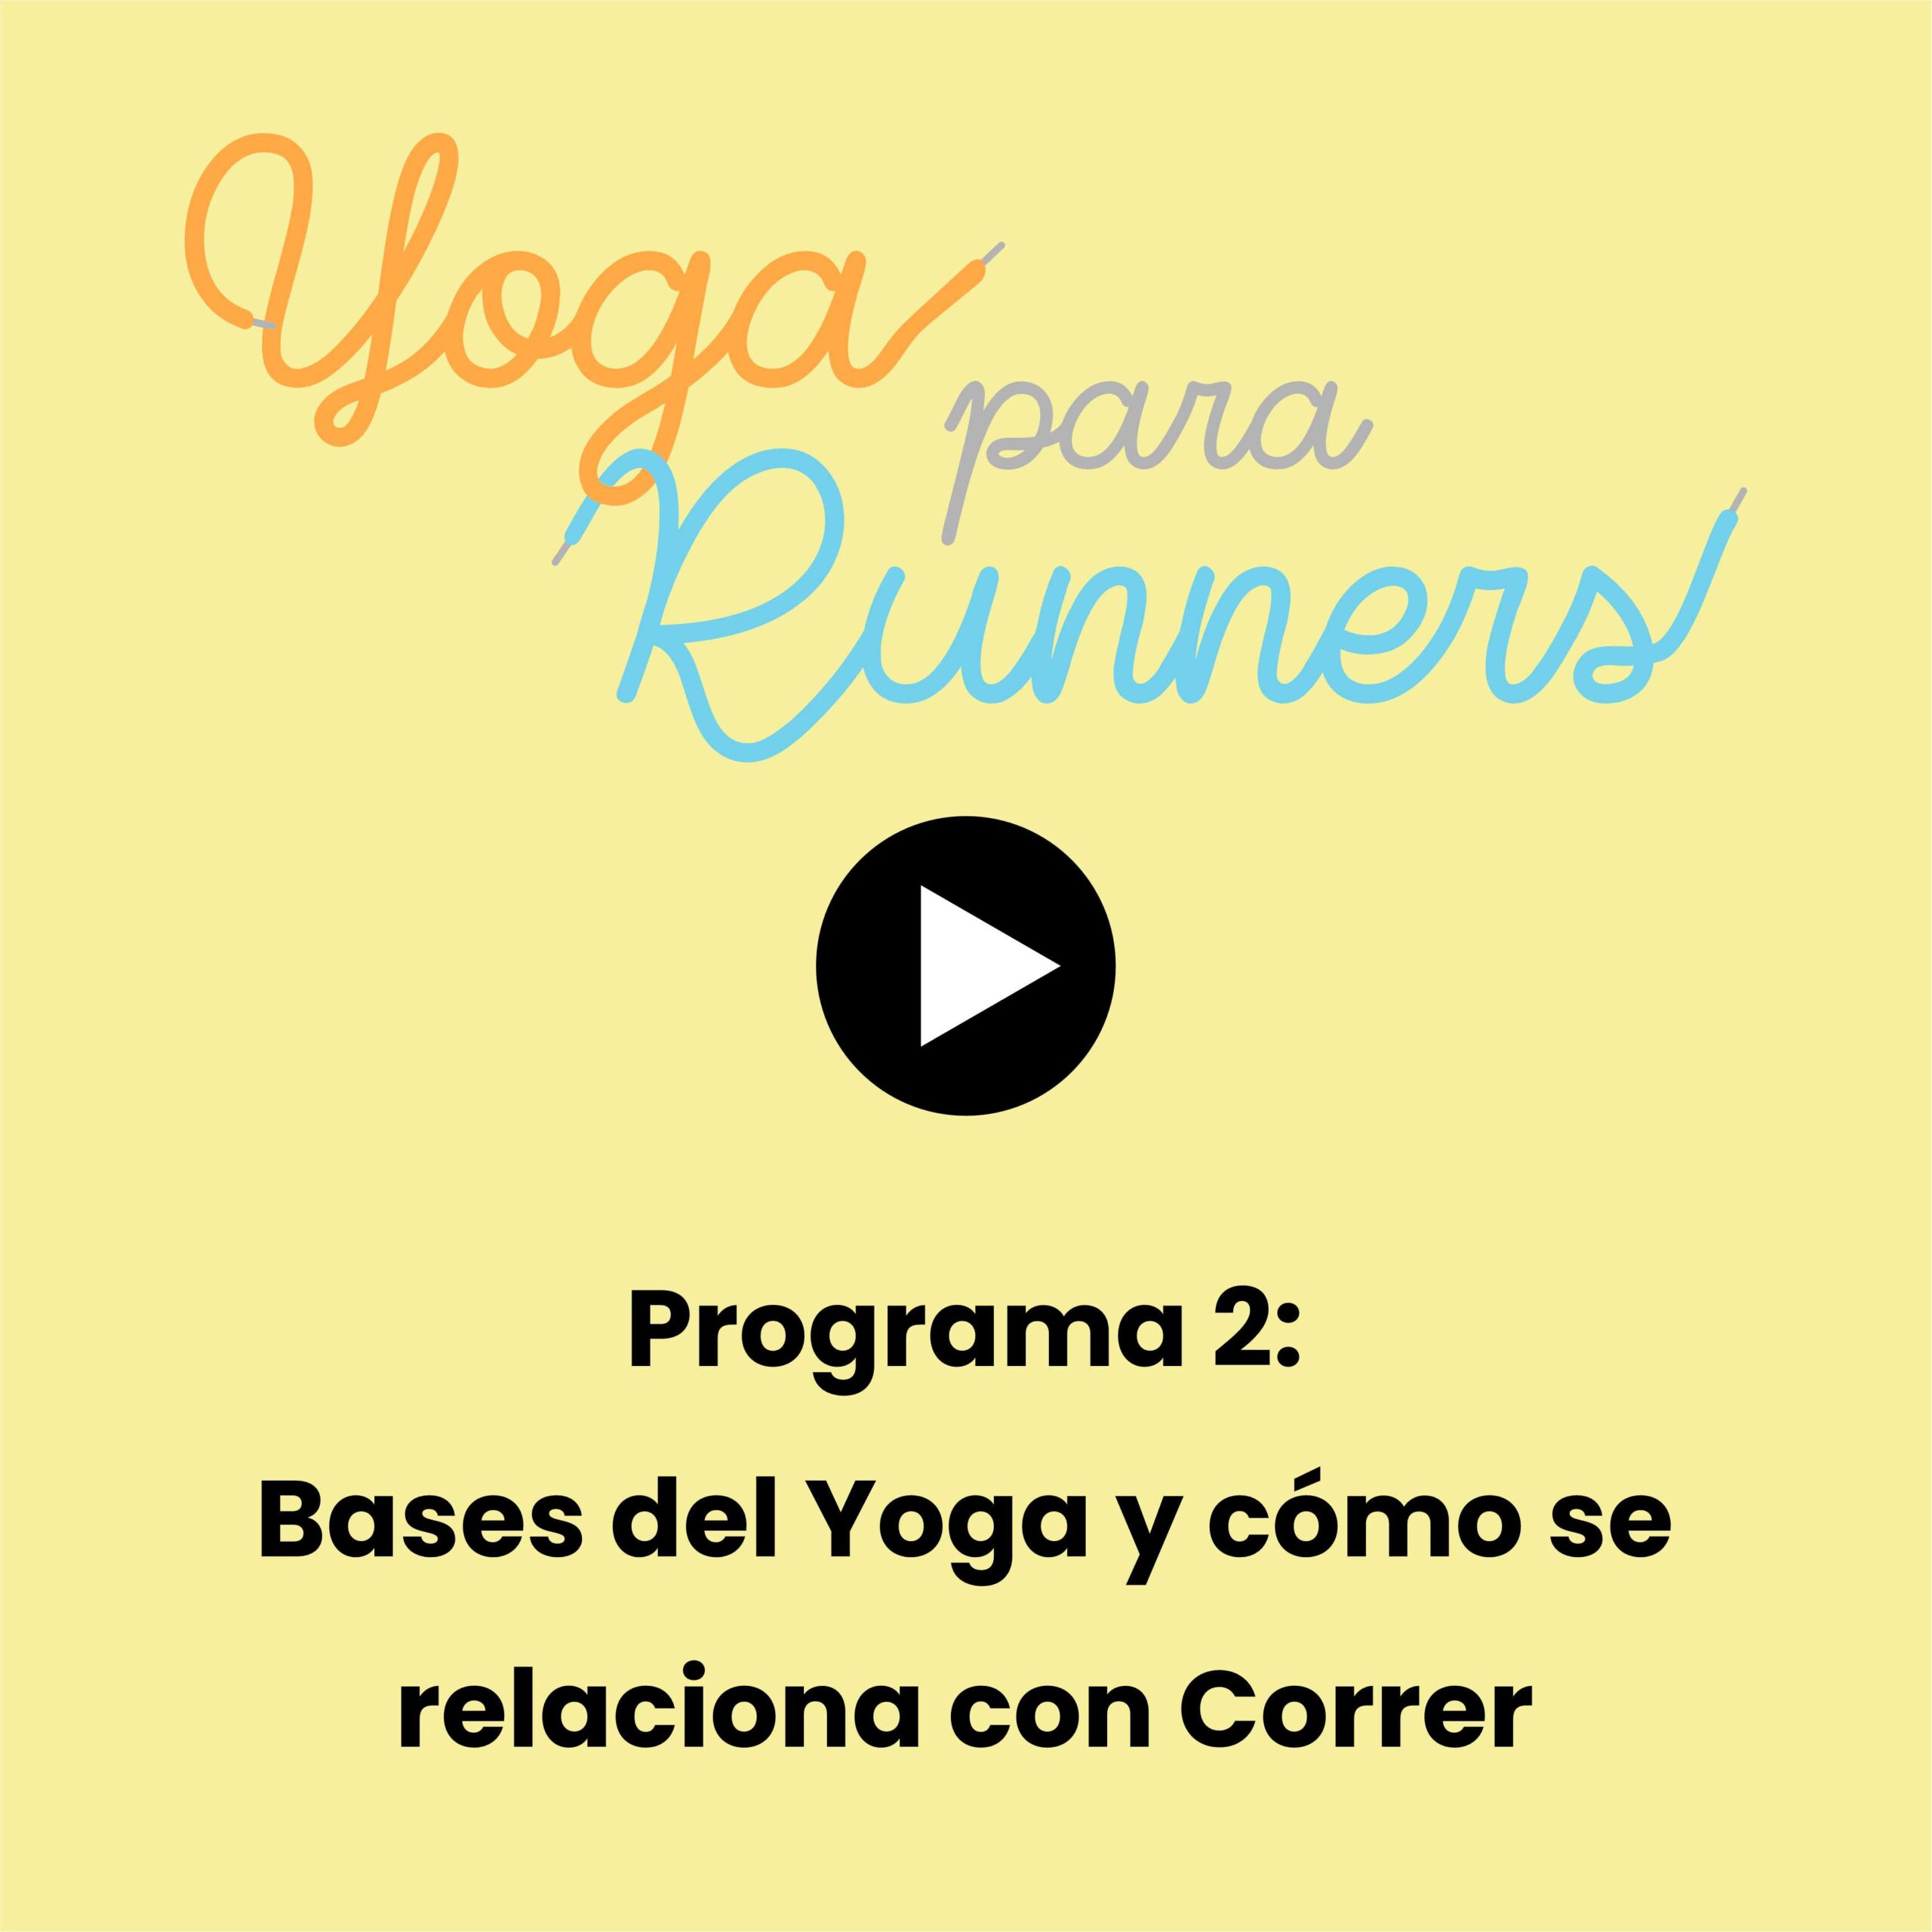 Programa 2: Fundamentos básicos del Yoga, lo primero es lo primero y cómo se relaciona con Correr